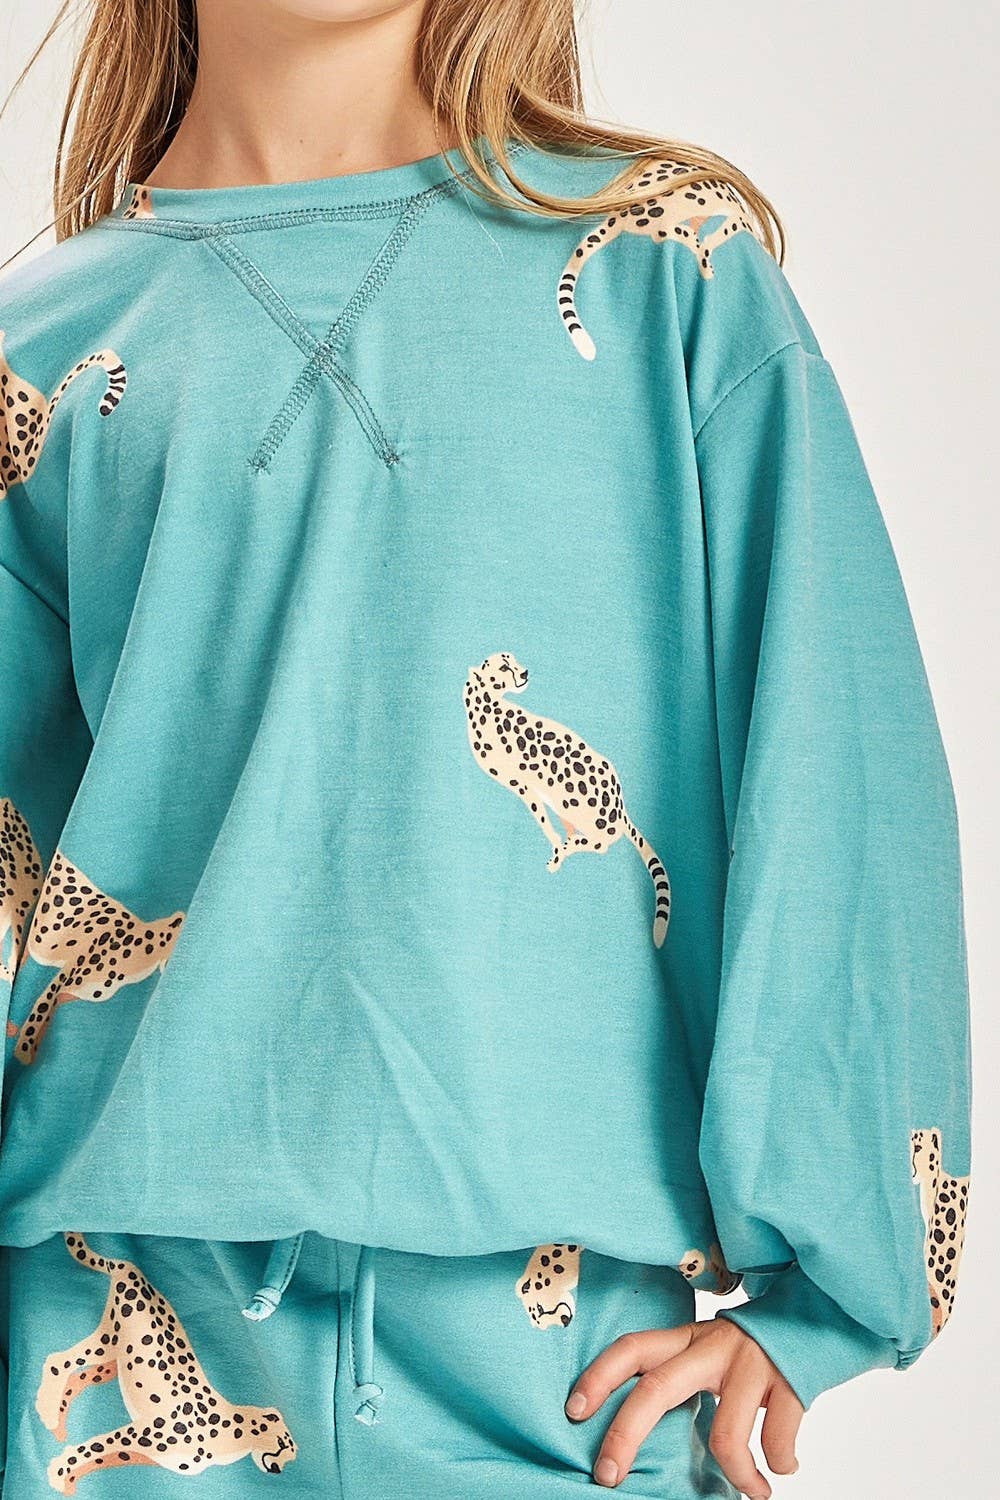 Cheetah Print Tween Sweatshirt - Milly's Boutique